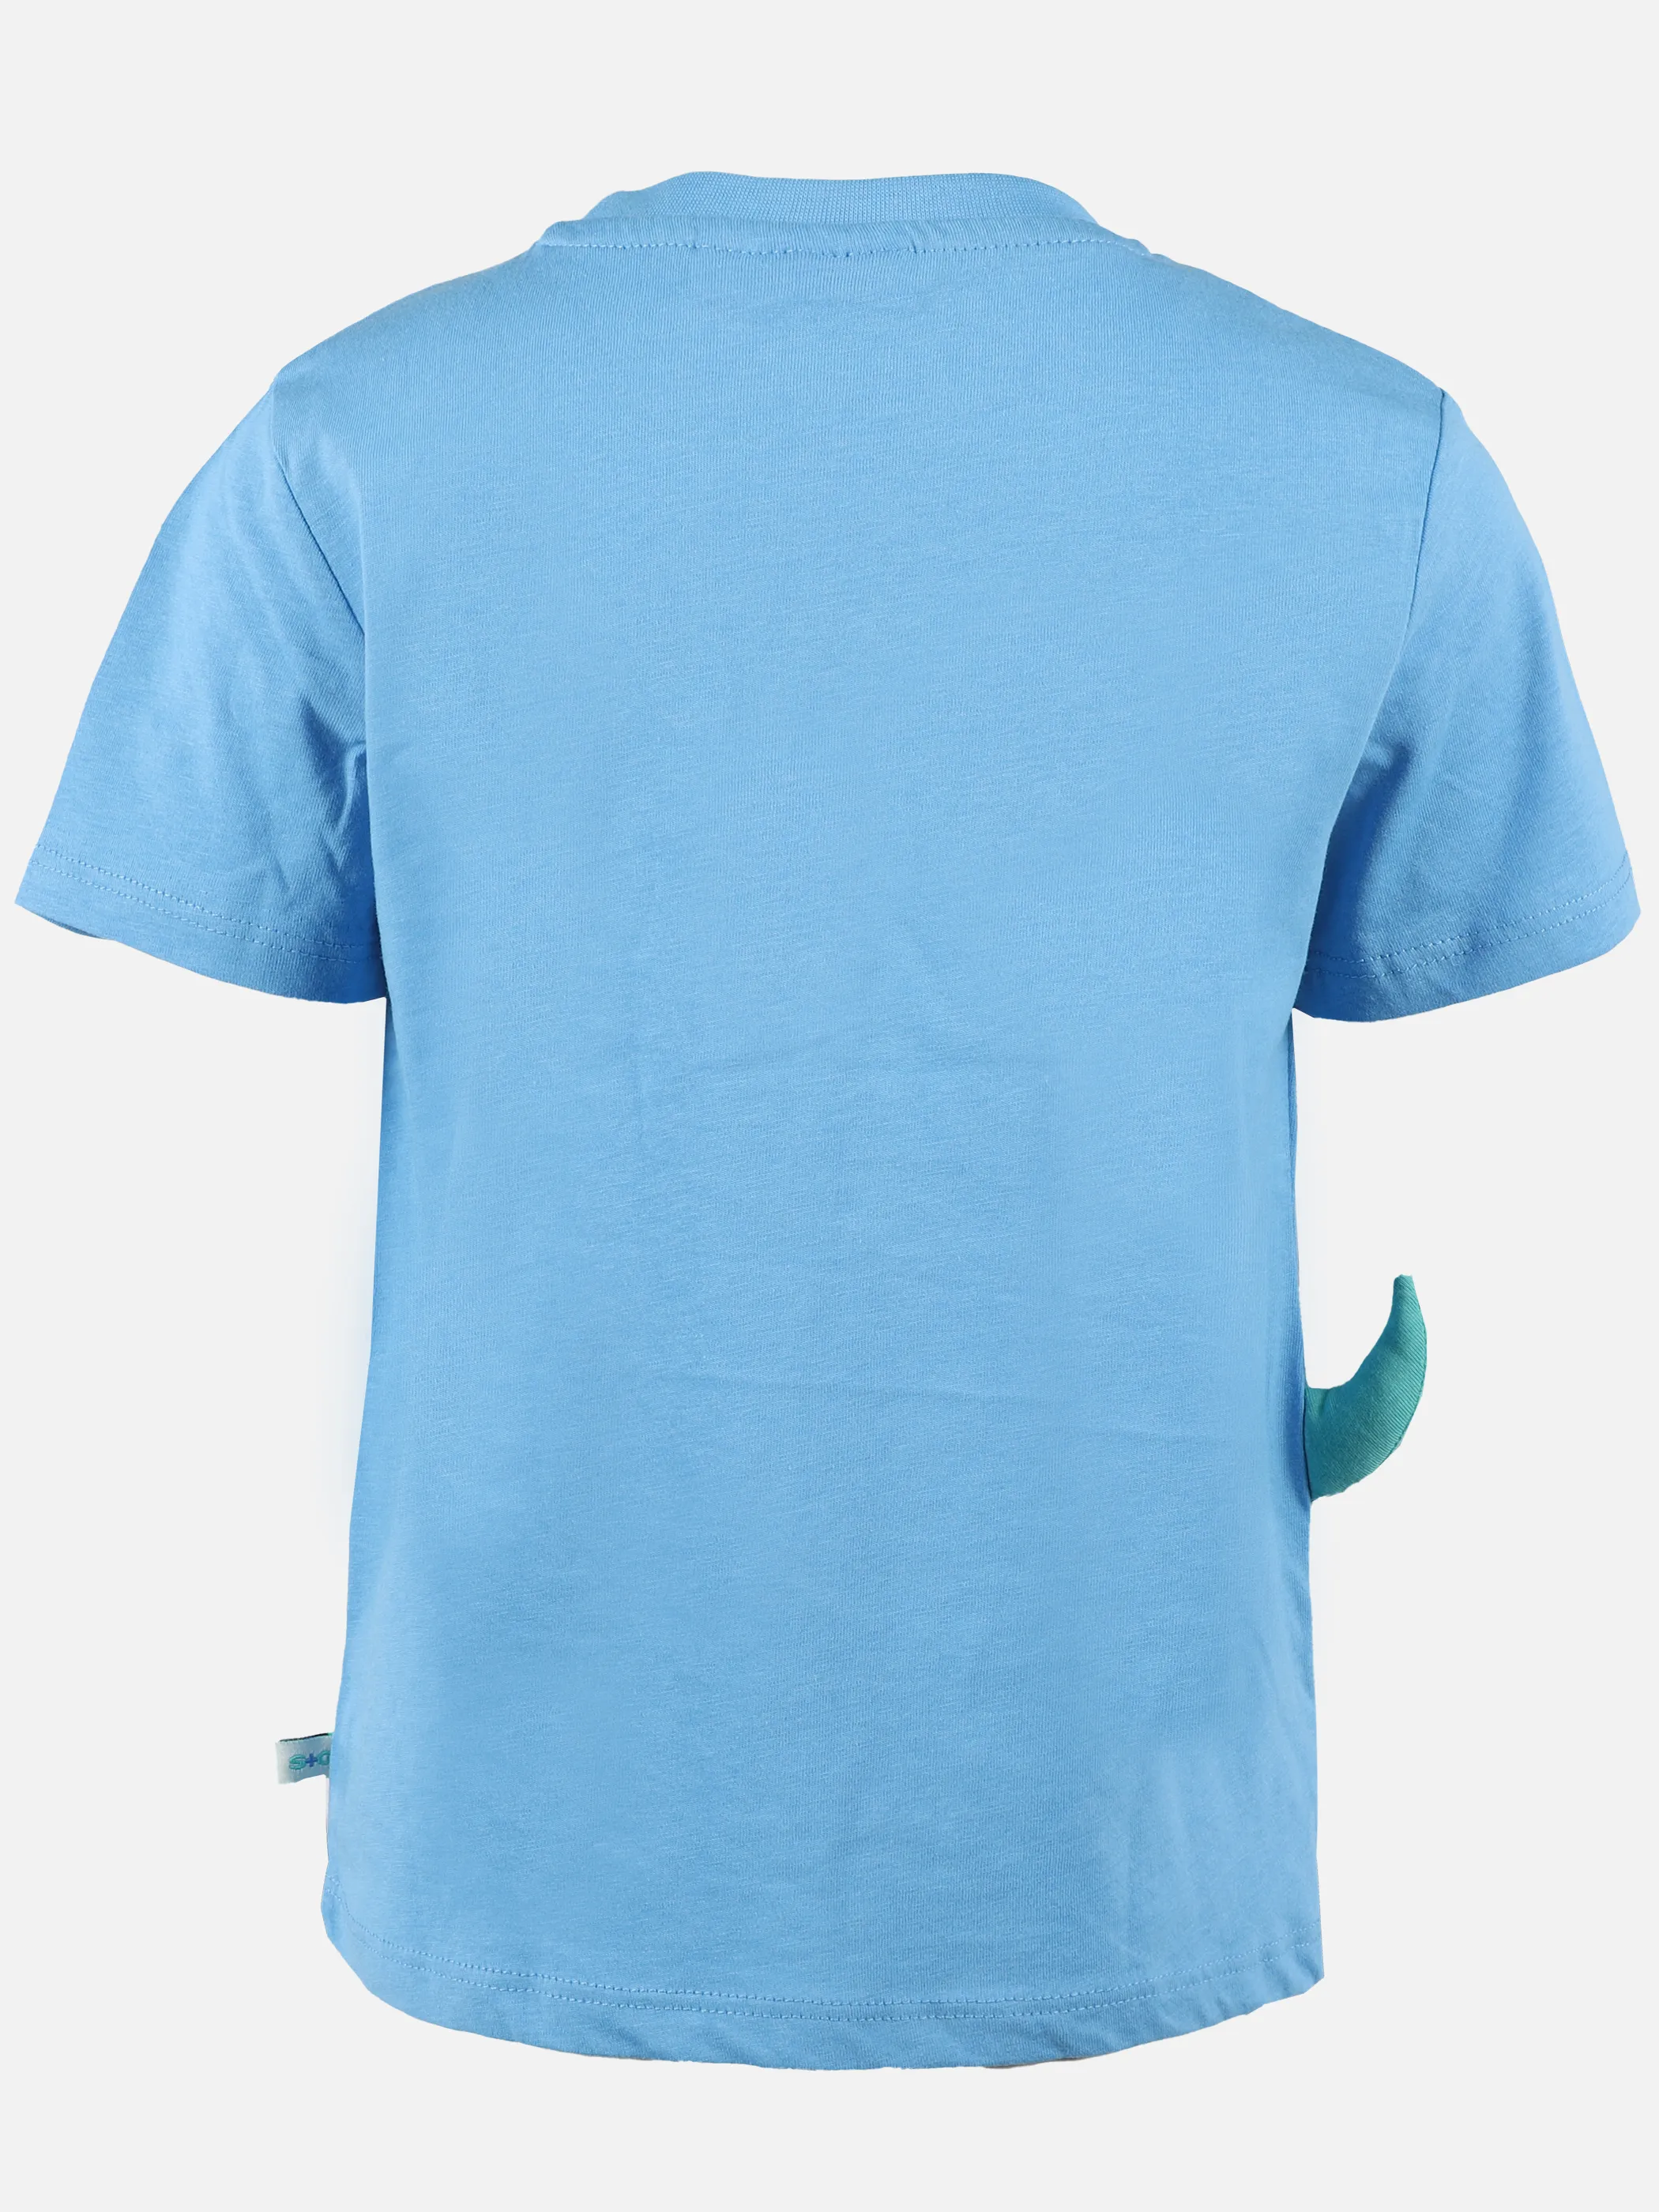 Stop + Go KJ T-Shirt in blau mit Frontdruck und Applik. Blau 891600 BLAU 2